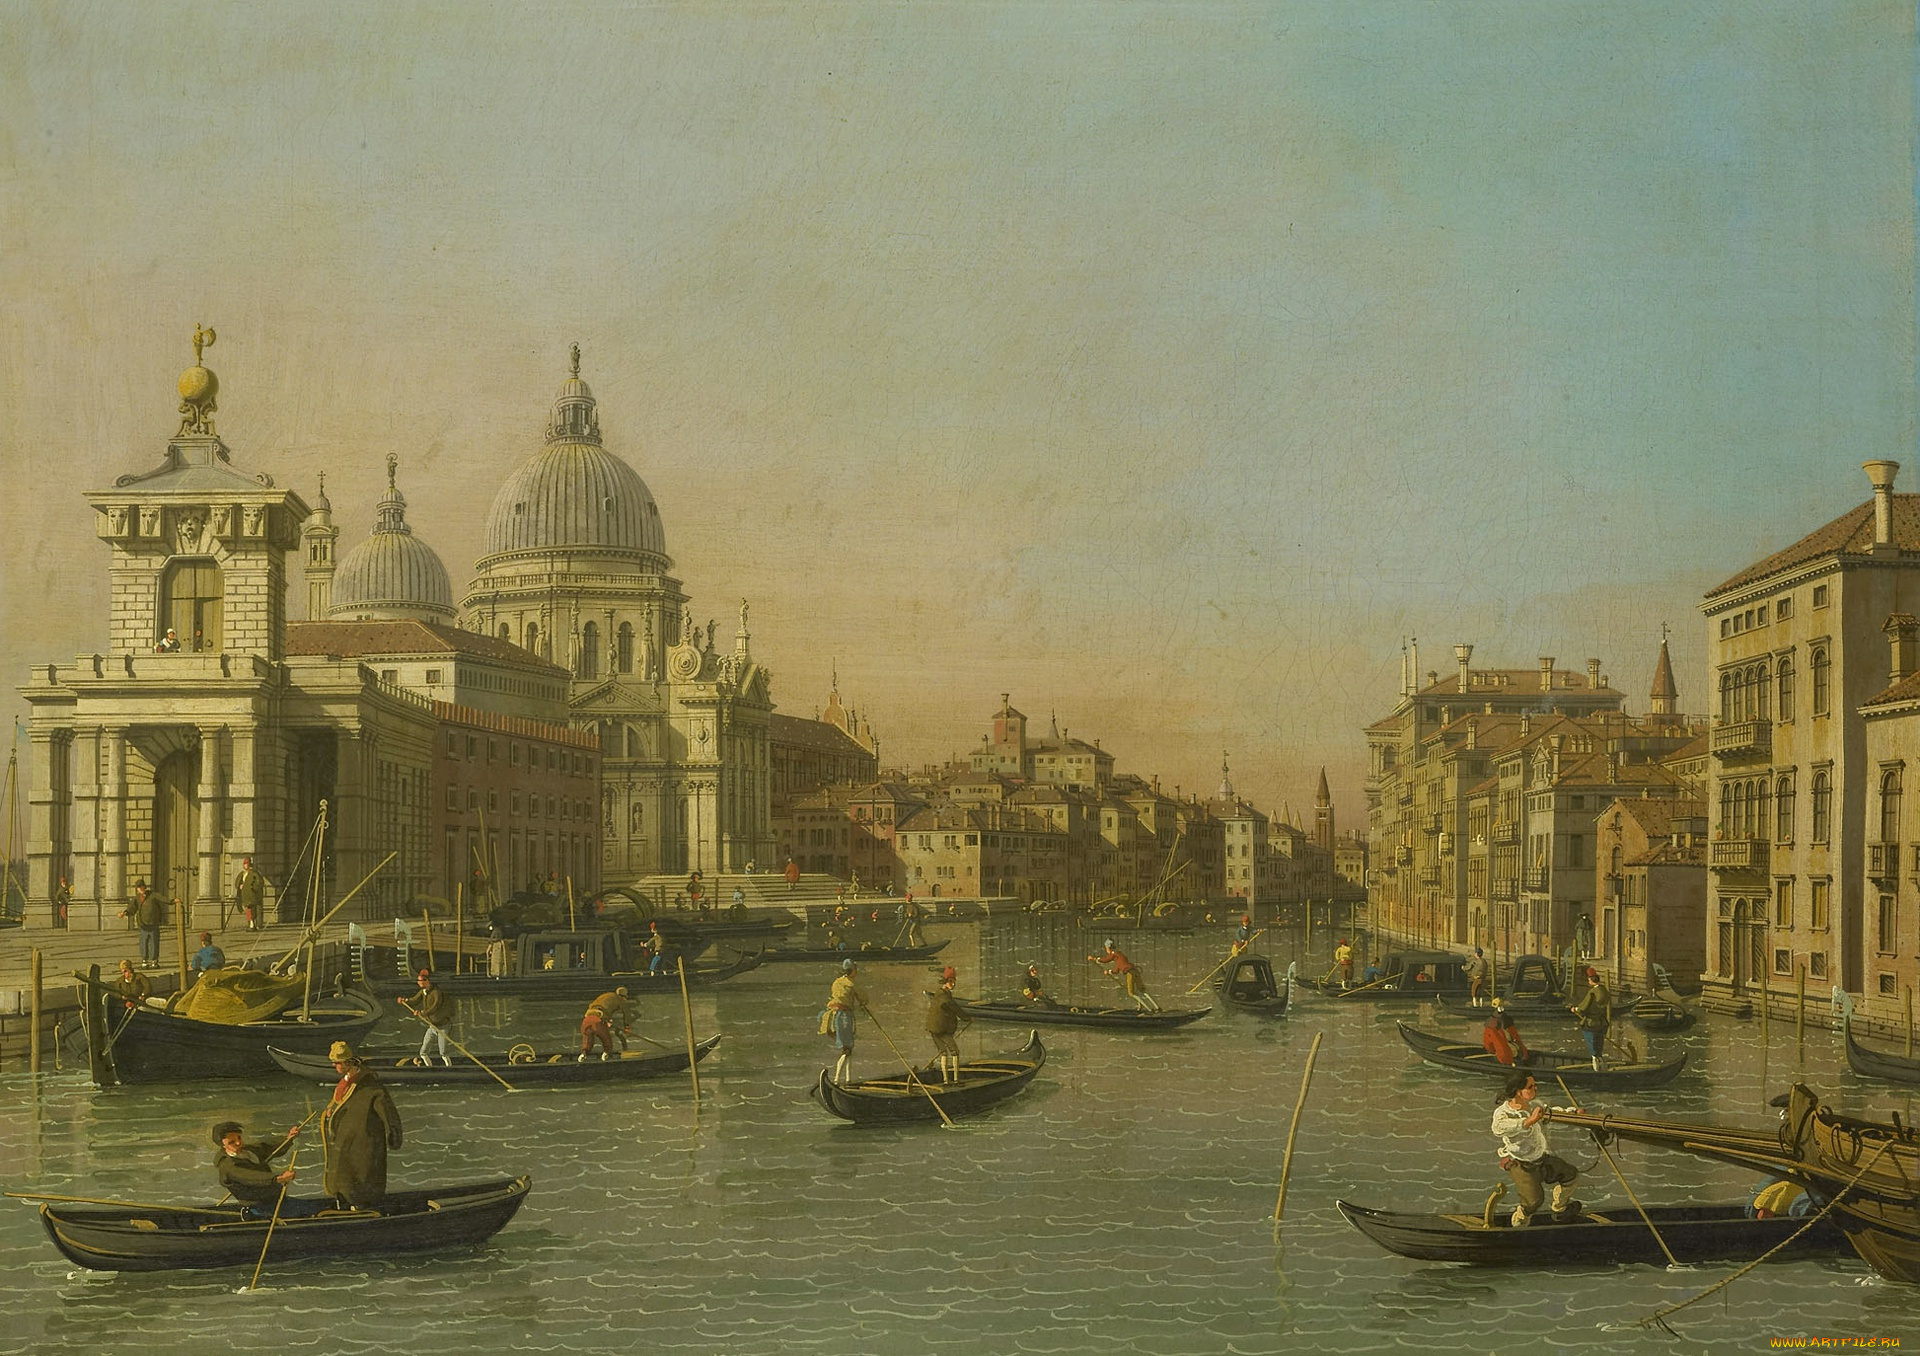 рисованное, живопись, каналетто, вход, в, гранд-канал, венеция, гондола, лодка, городской, пейзаж, картина